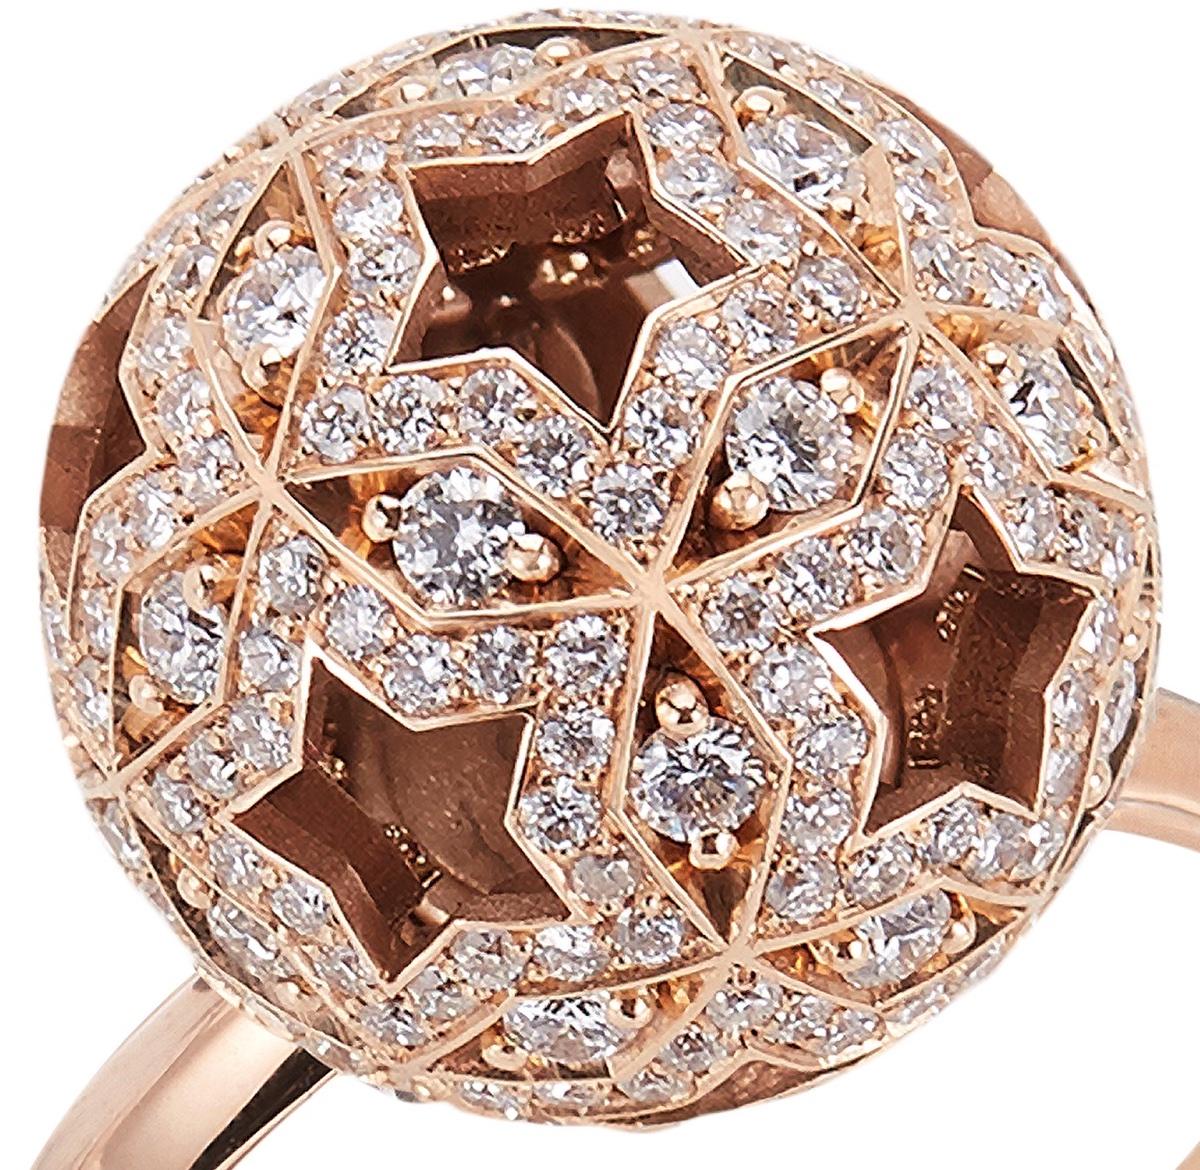 Ein einzigartiges Ringdesign, das von den Konstellationen des Nachthimmels inspiriert ist und mit Hirsh Celestial Movement geschaffen wurde.

- 245 Diamanten im Rundschliff mit einem Gesamtgewicht von ca. 1 Karat
- Hergestellt aus 18 Karat Roségold